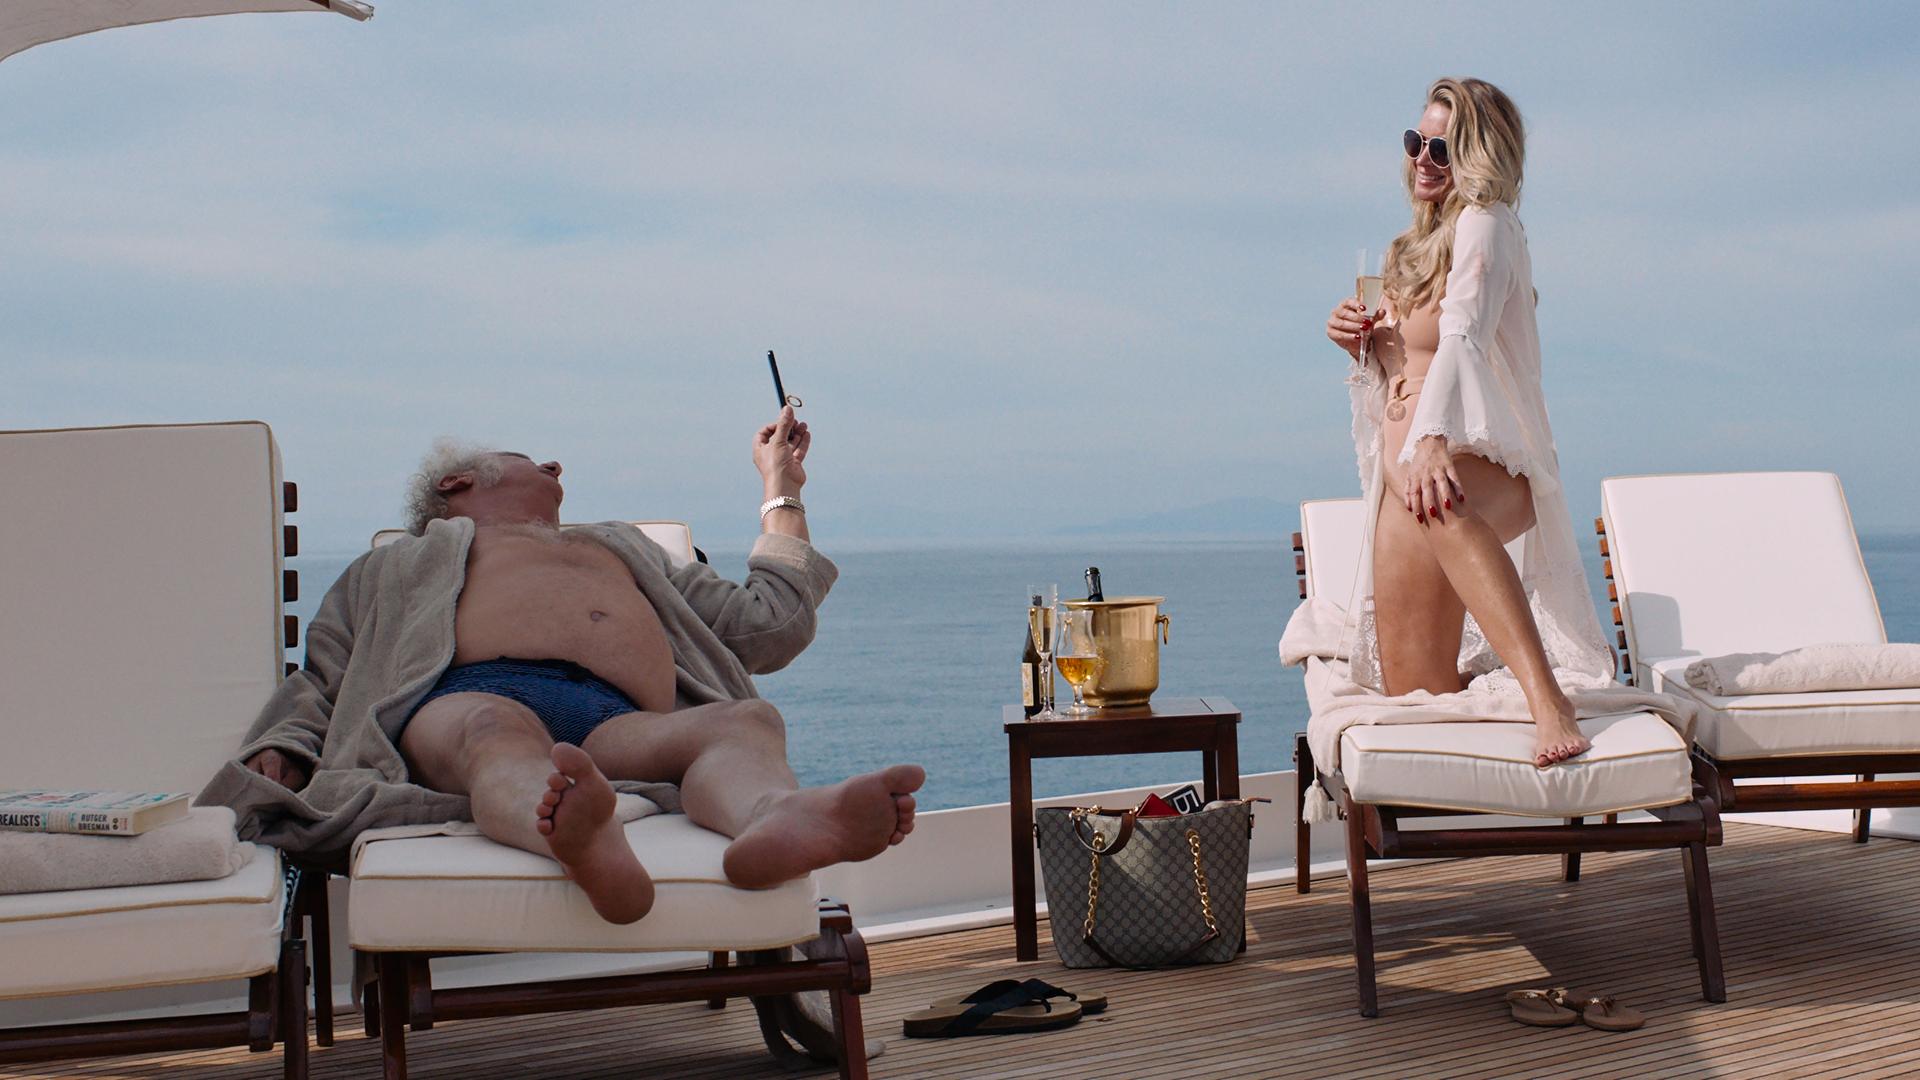 Filmstill aus "Triangle of Sadness": Eine blonde und leicht bekleidete Frau schäkert an Bord einer Luxusjacht mit einem älteren Mann.